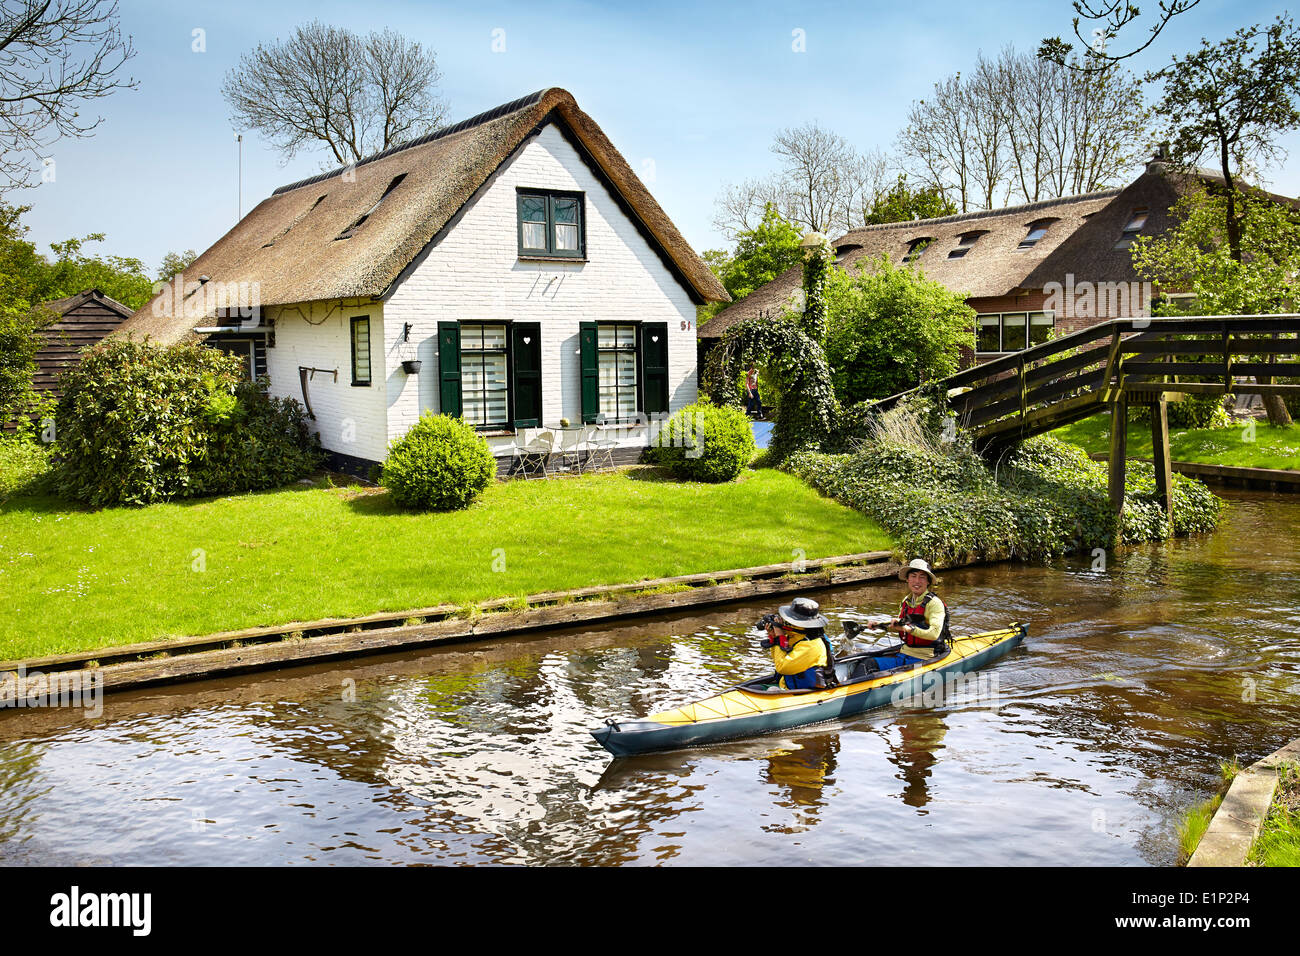 Les touristes sur le bateau naviguant sur le canal, Giethoorn village - Hollande Pays-Bas Banque D'Images